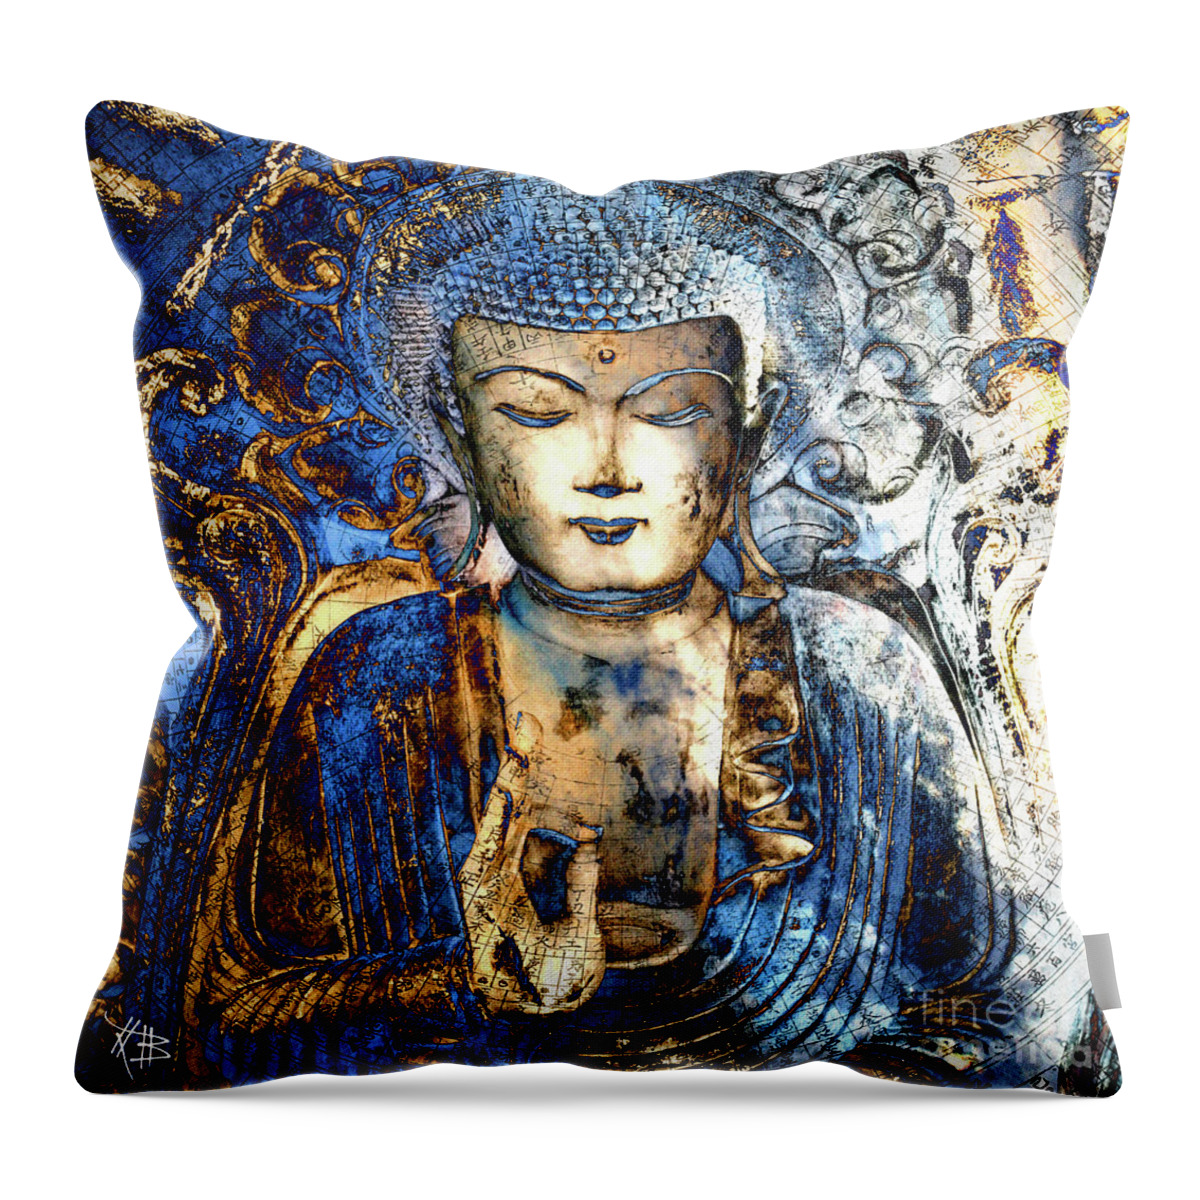 Buddha Throw Pillow featuring the digital art Inner Guidance by Christopher Beikmann